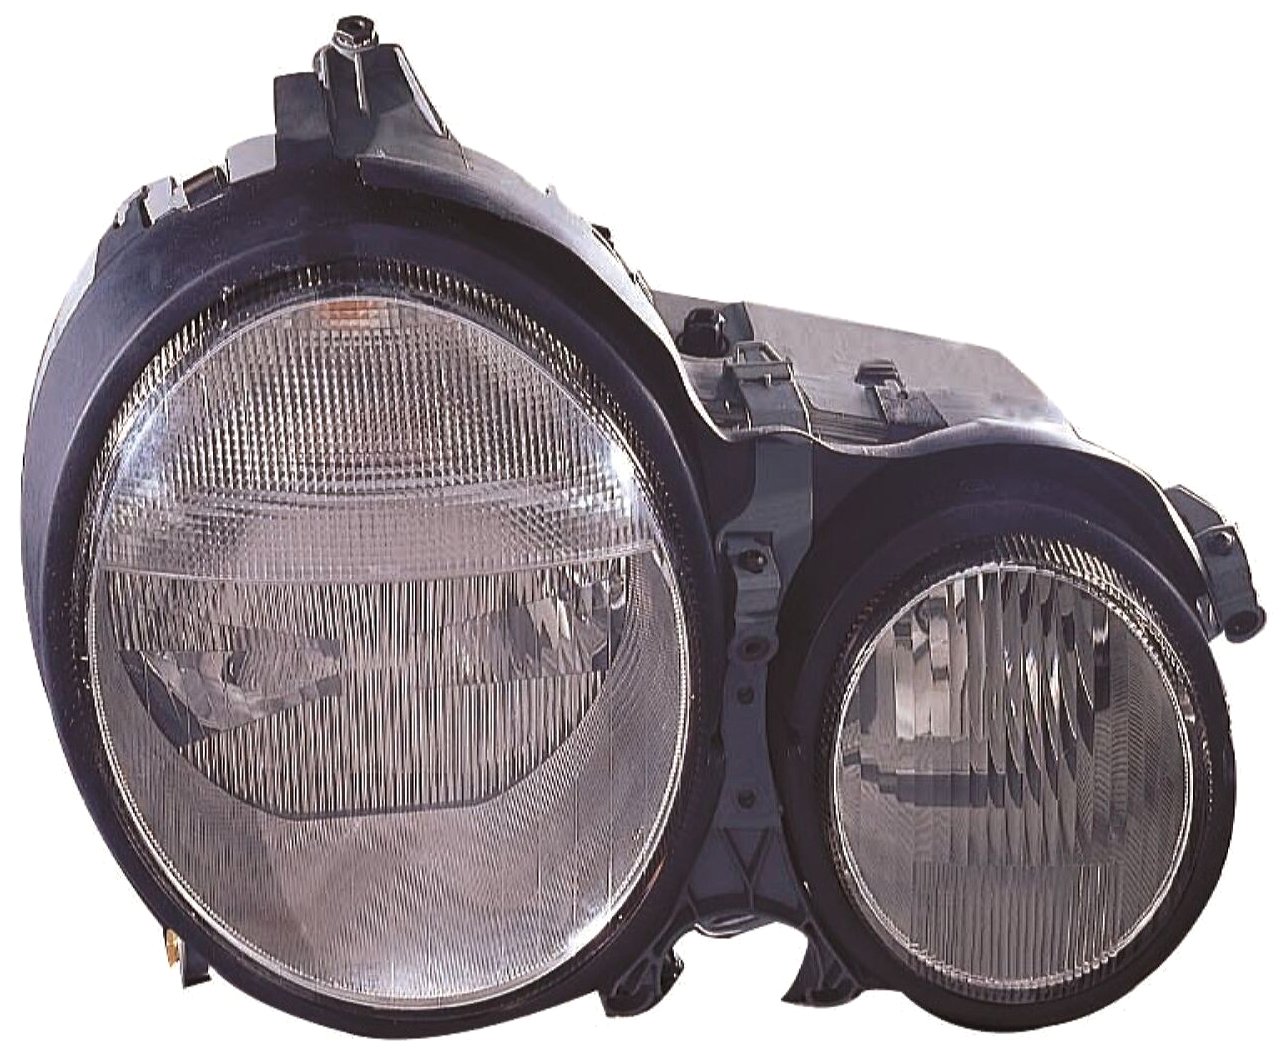 TarosTrade 37-0187-R-46715 Scheinwerfer Elektrischer Ohne Glühlampe Mit Motor Xenon Rechts von DoctorAuto